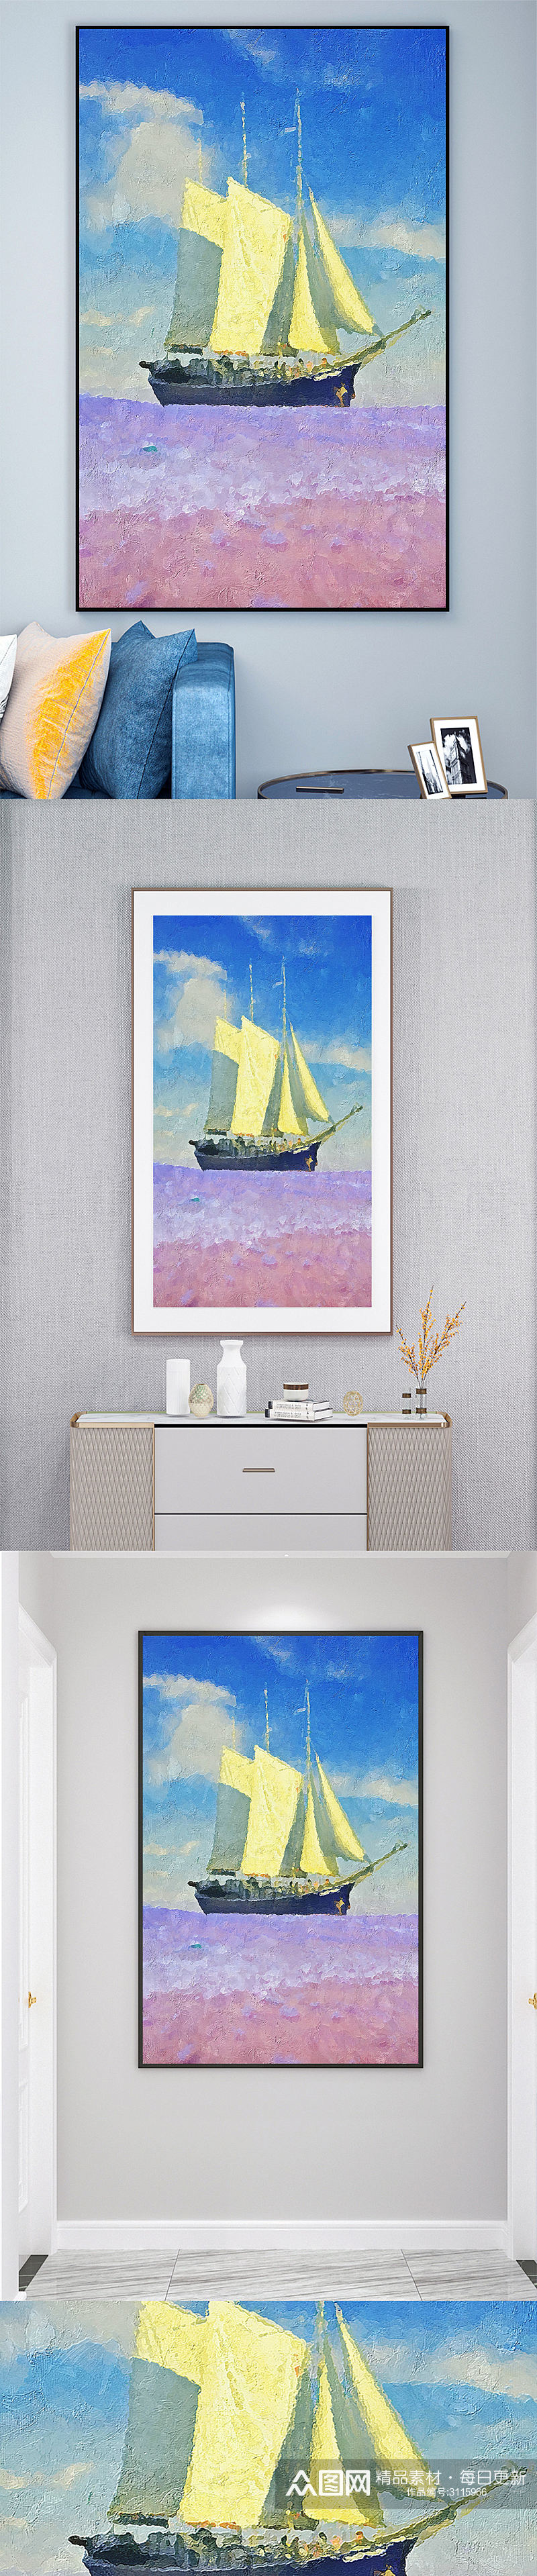 油画帆船海洋壁画装饰画素材